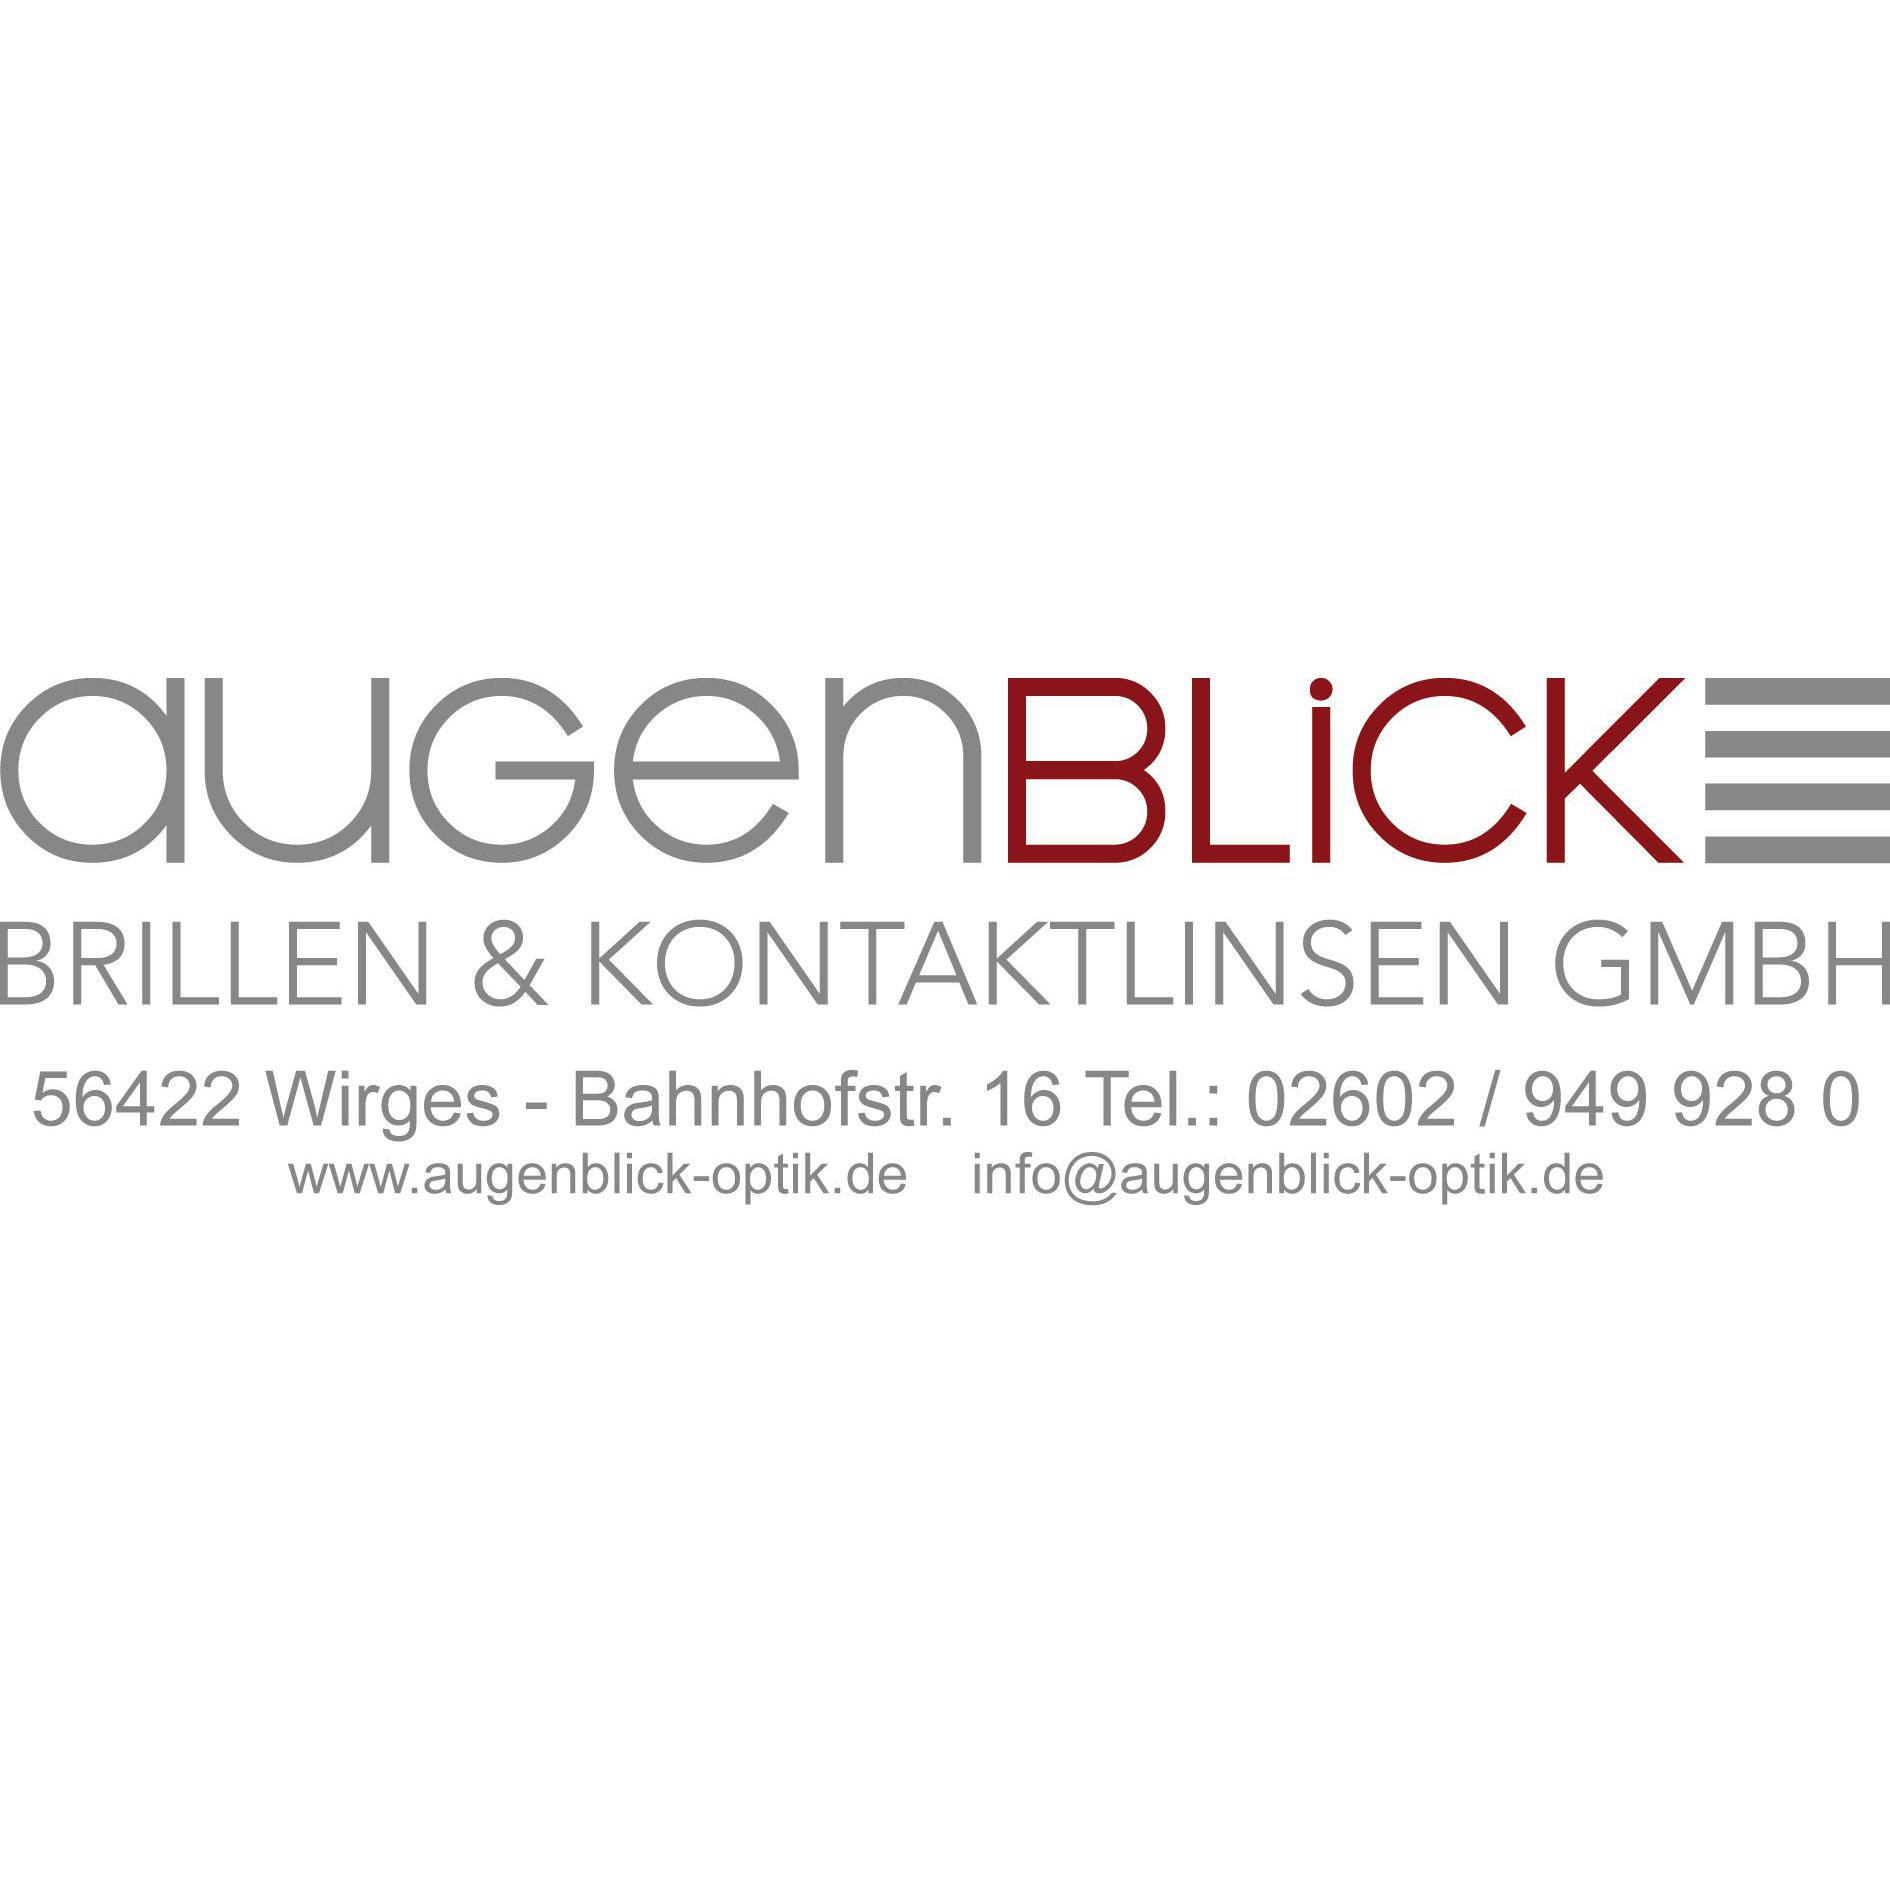 Logo Augenblick Brillen Kontaktlinsen GmbH